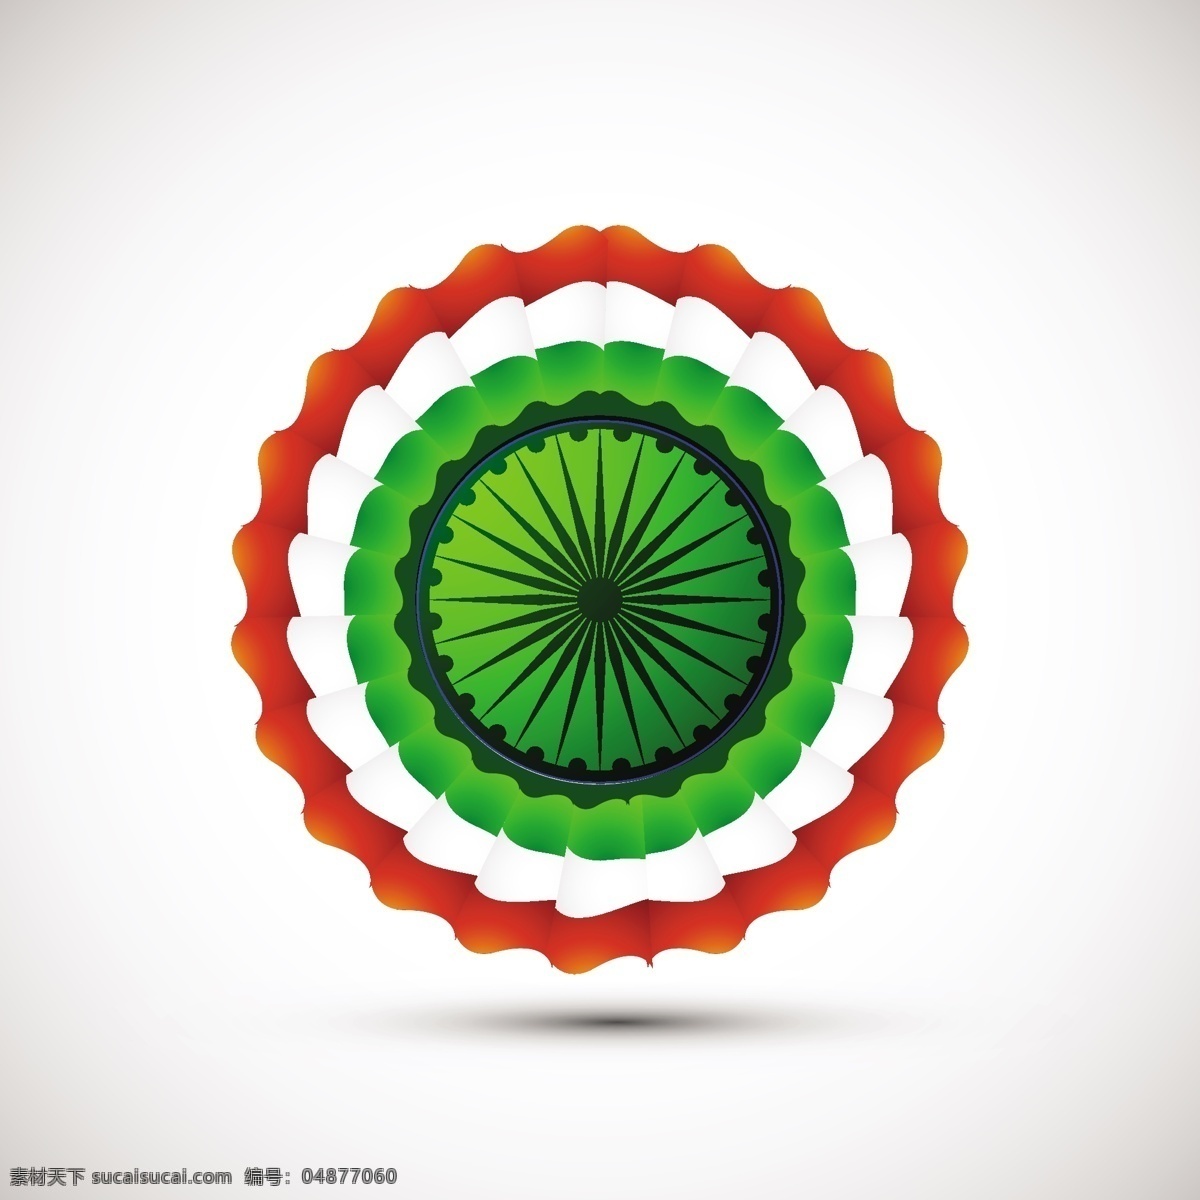 印度 国旗 主题 背景 抽象 徽章 节日 车轮 和平 印度国旗 独立日 国家 自由 日 政府 有光泽 爱国 白色